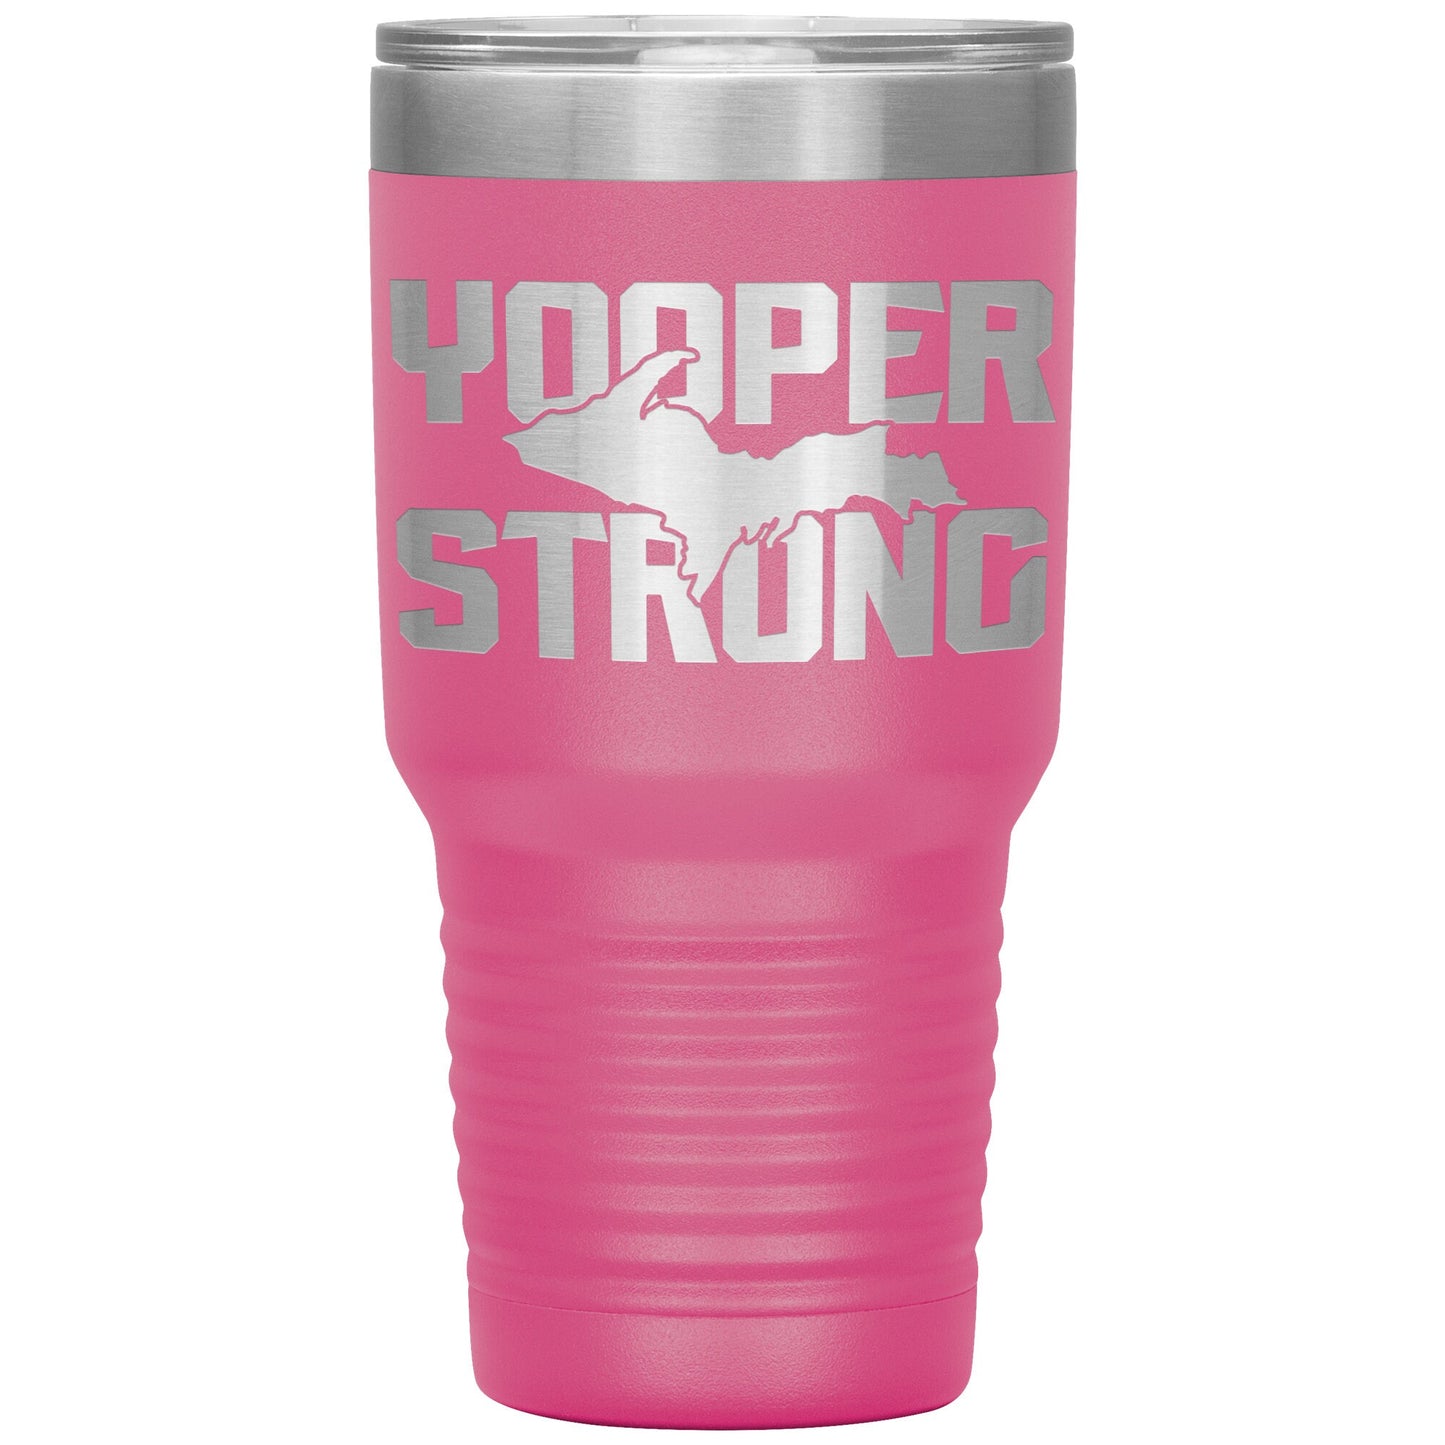 U.P. Coffee Tumbler 30 oz | Yooper Strong | Yooper Travel Mug